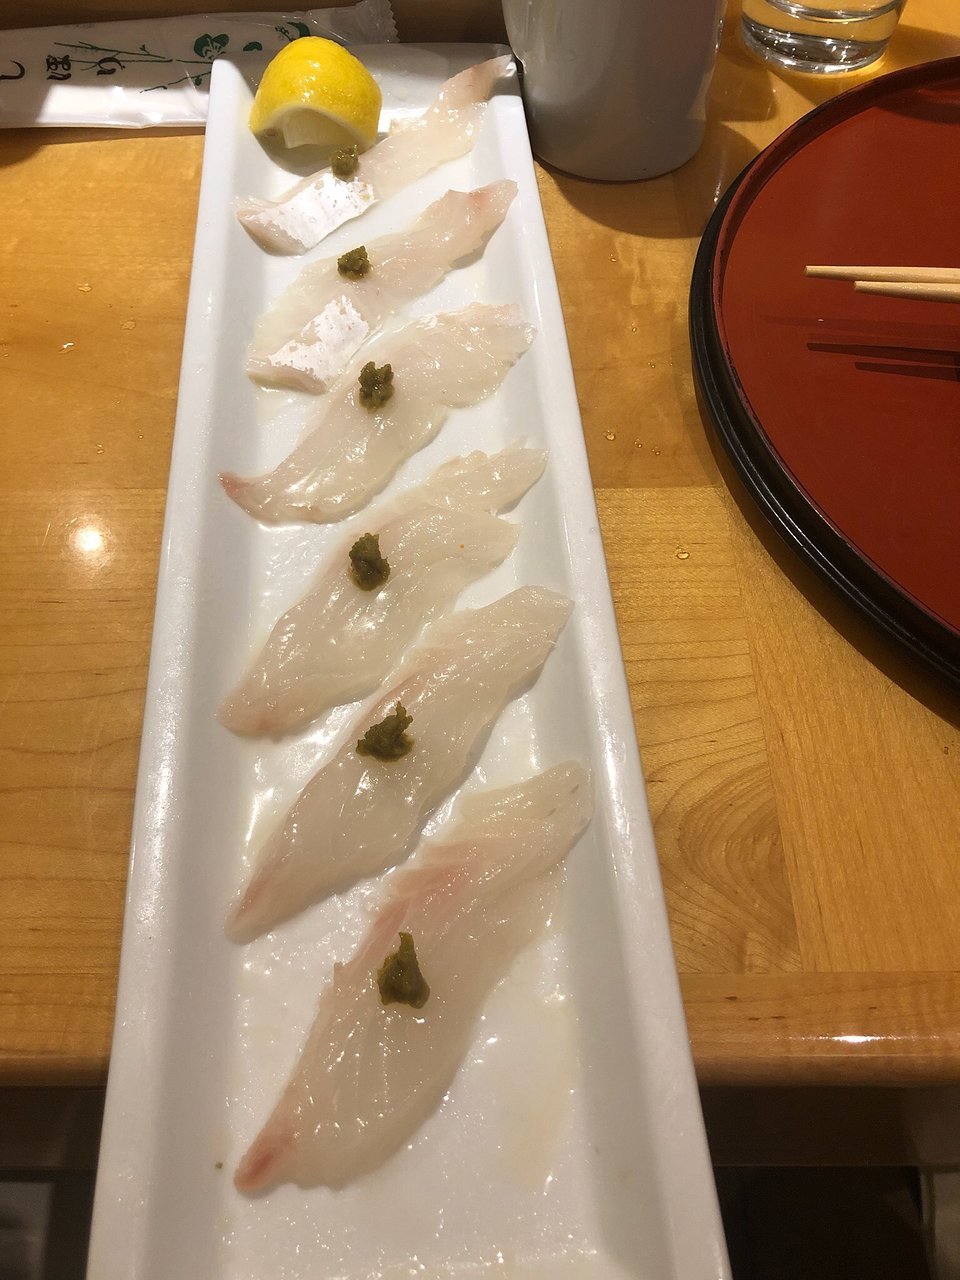 Kaisen Sushi Restaurant